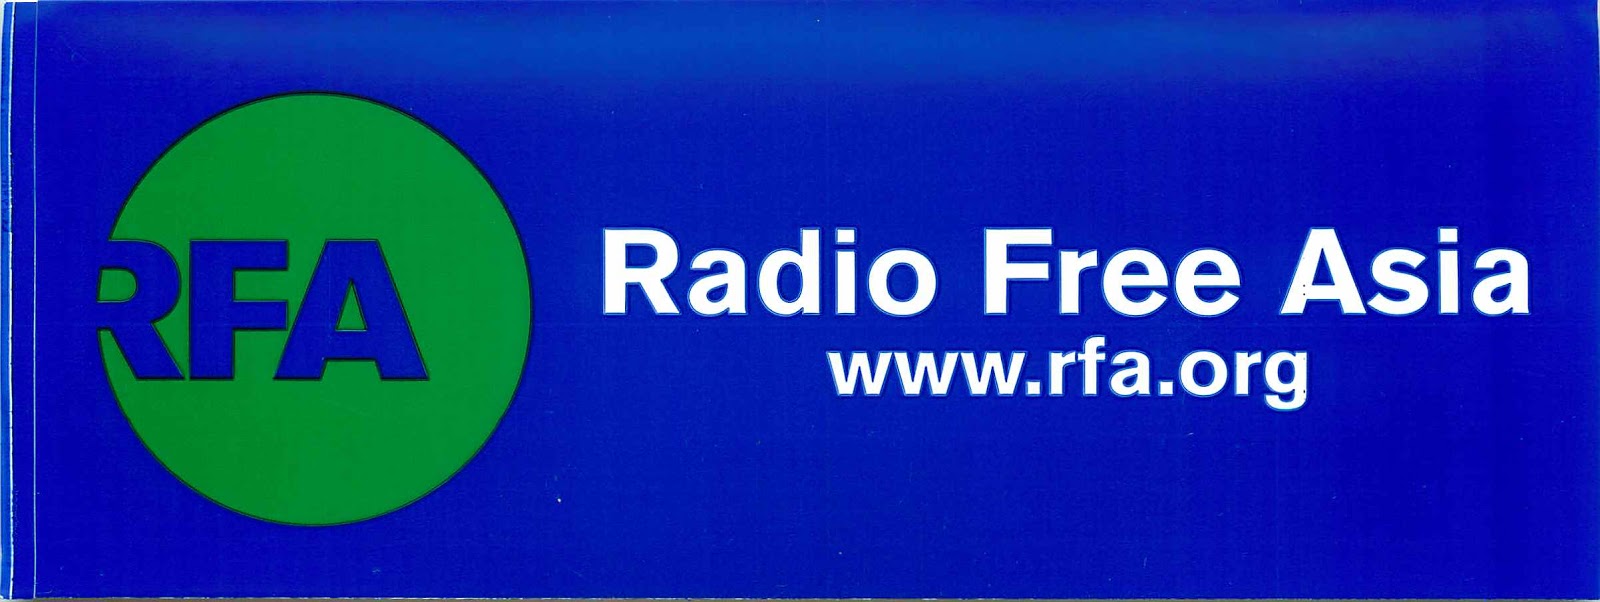 Free Asia Radio 86